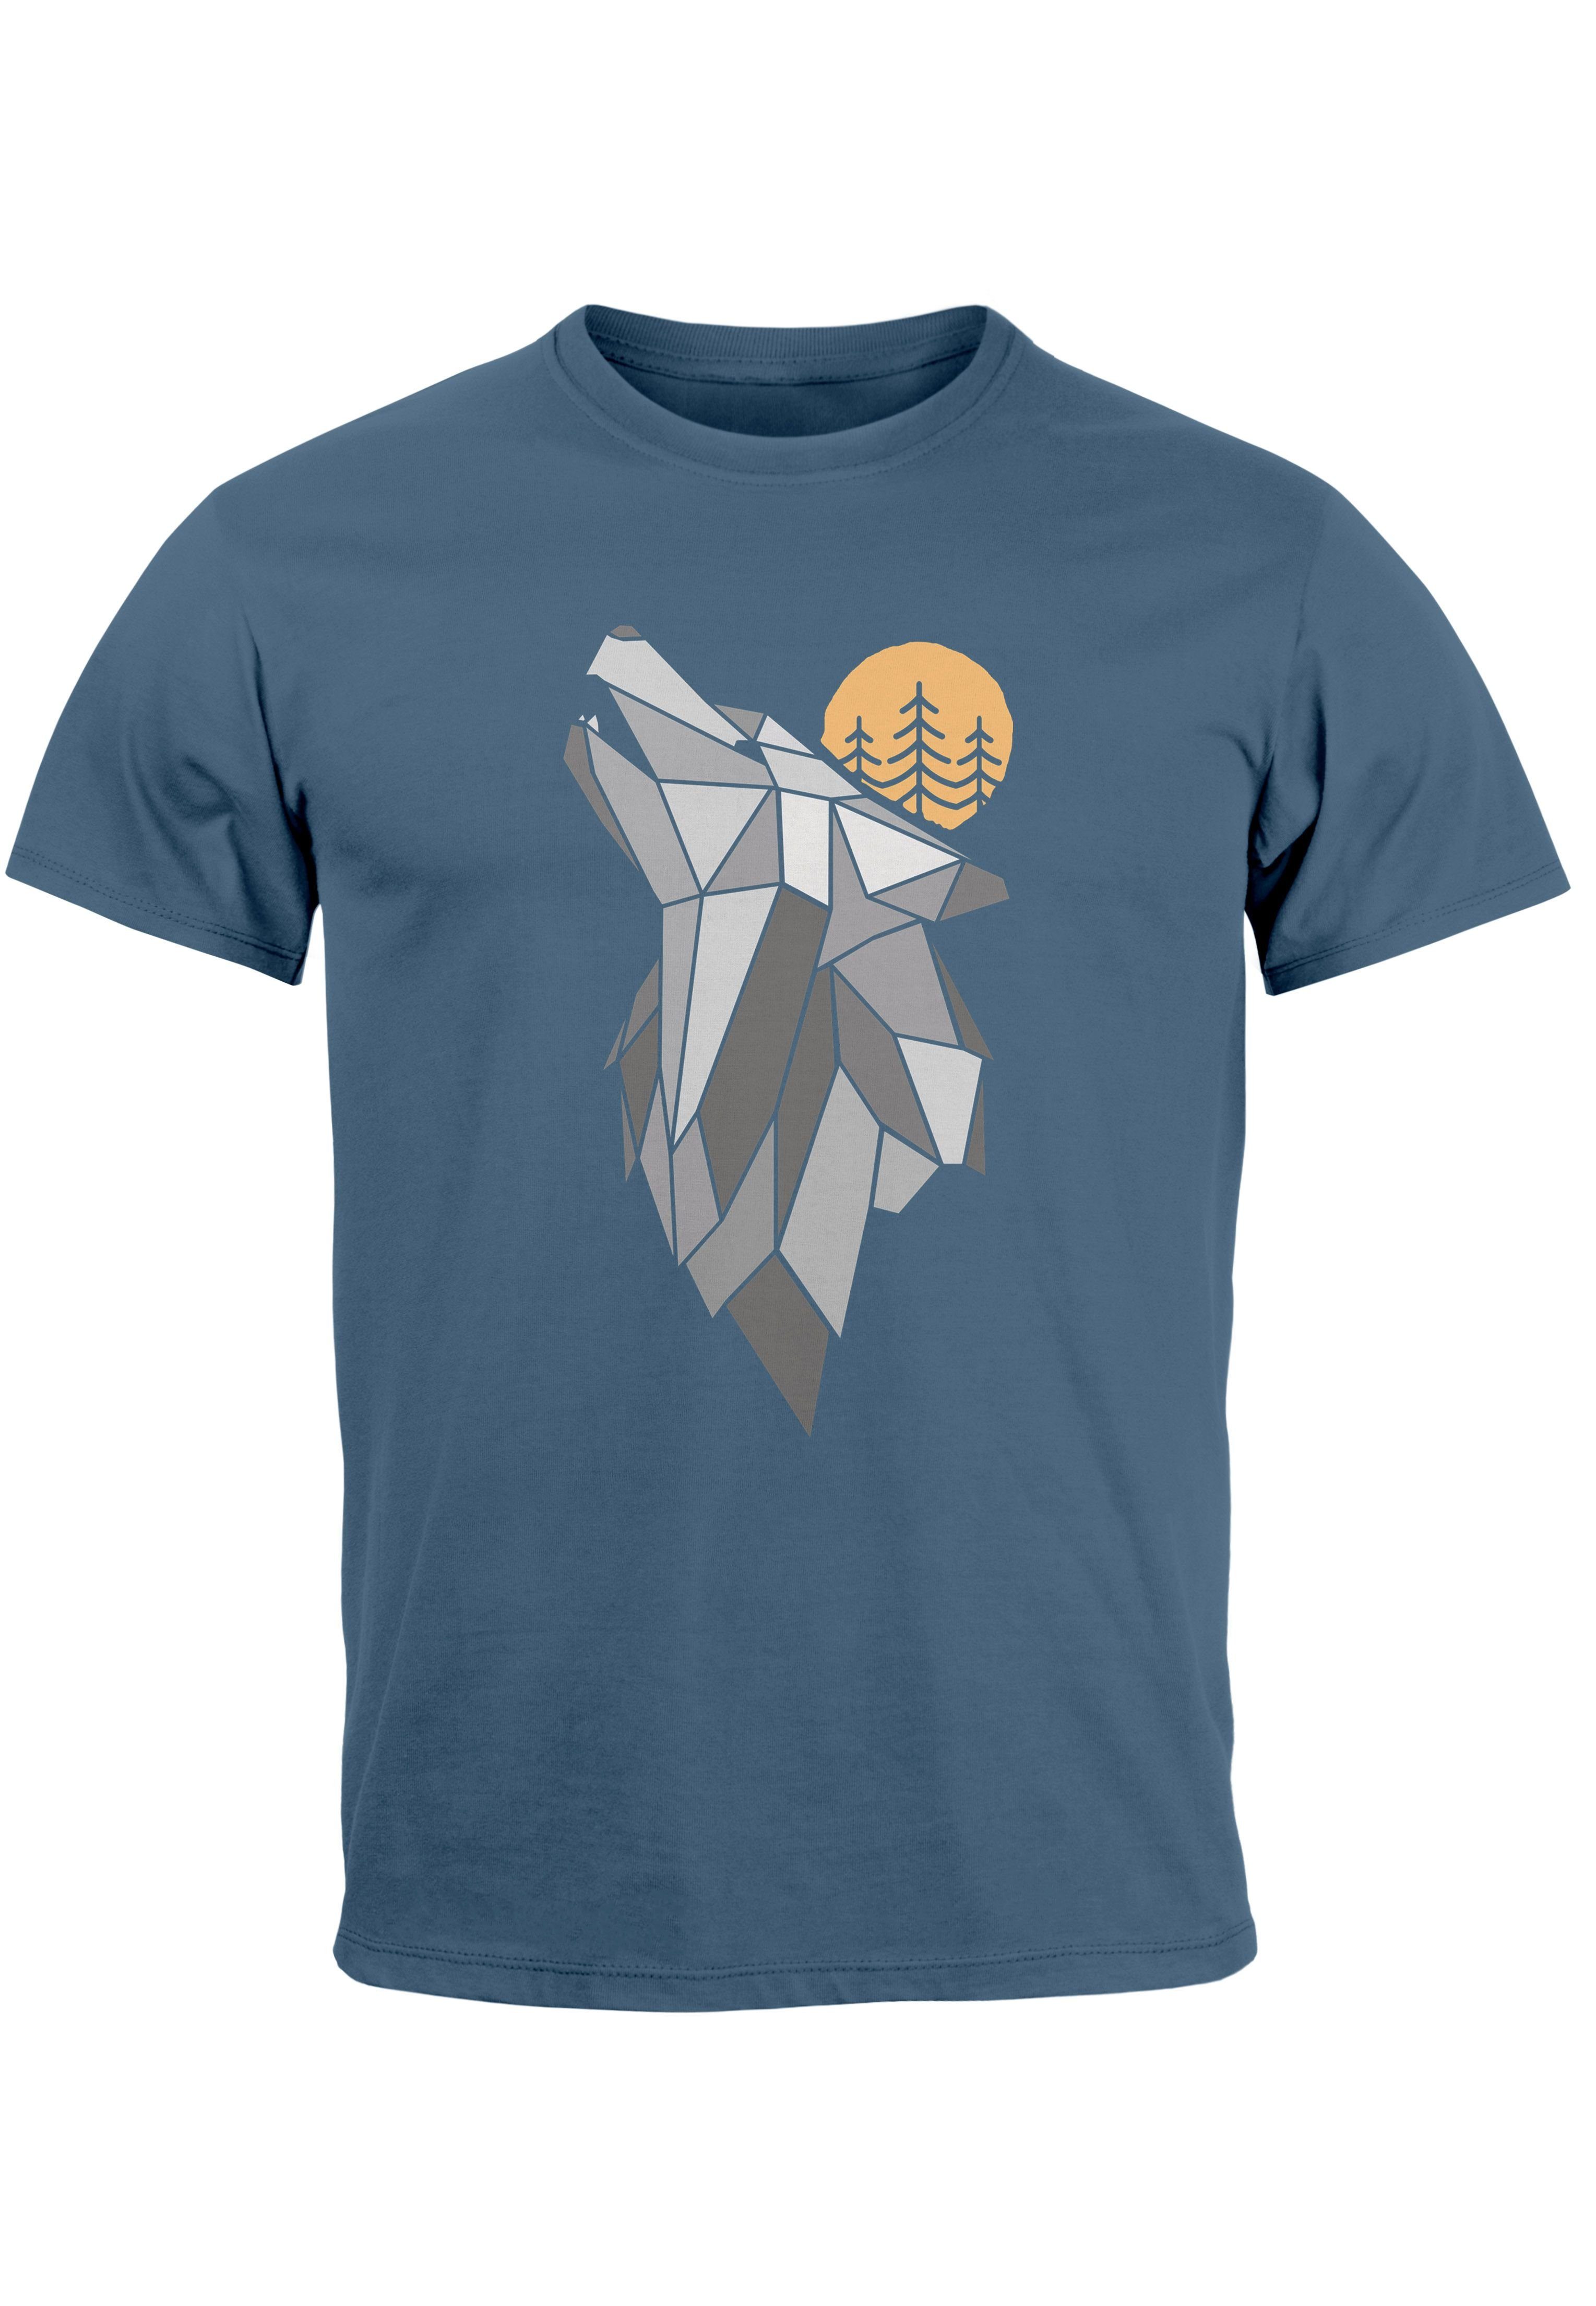 Print T-Shirt denim Aufdruck Wolf Wildnis blue Print-Shirt Wald Outdoor mit Natur Herren Fash Neverless Tiermotiv